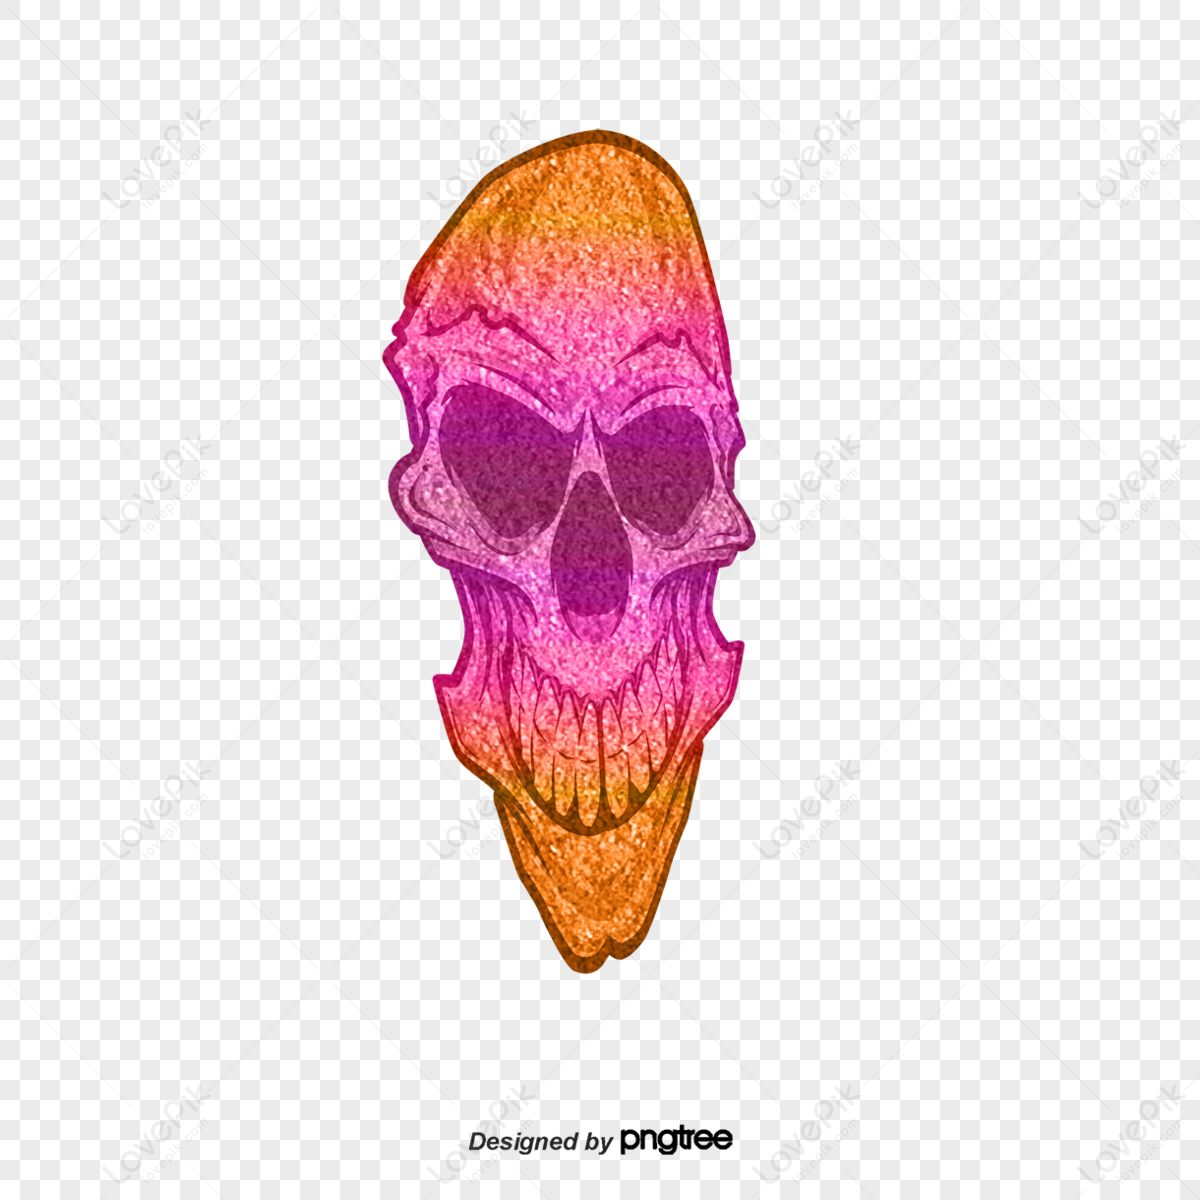 Tattoo skull logo vector free download